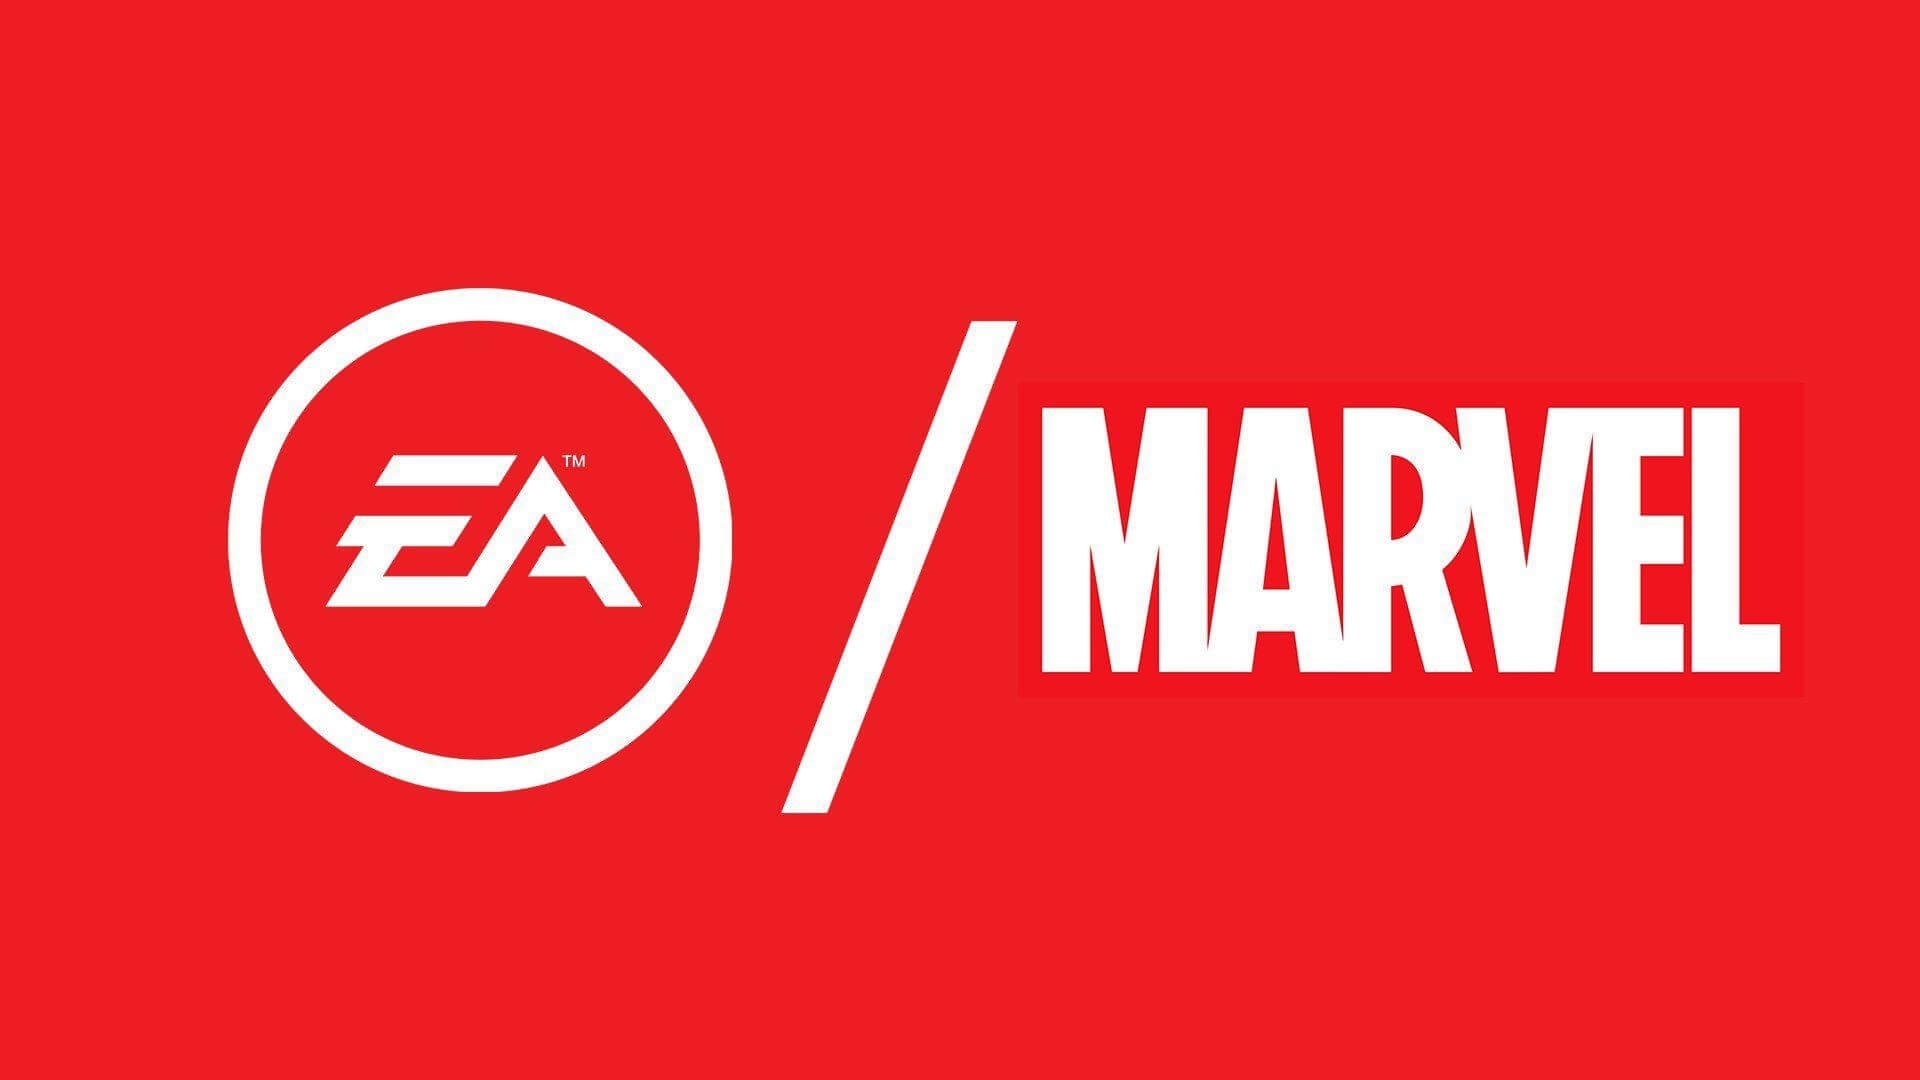 Инсайдер: новая игра EA по Marvel - проект про Черную Пантеру